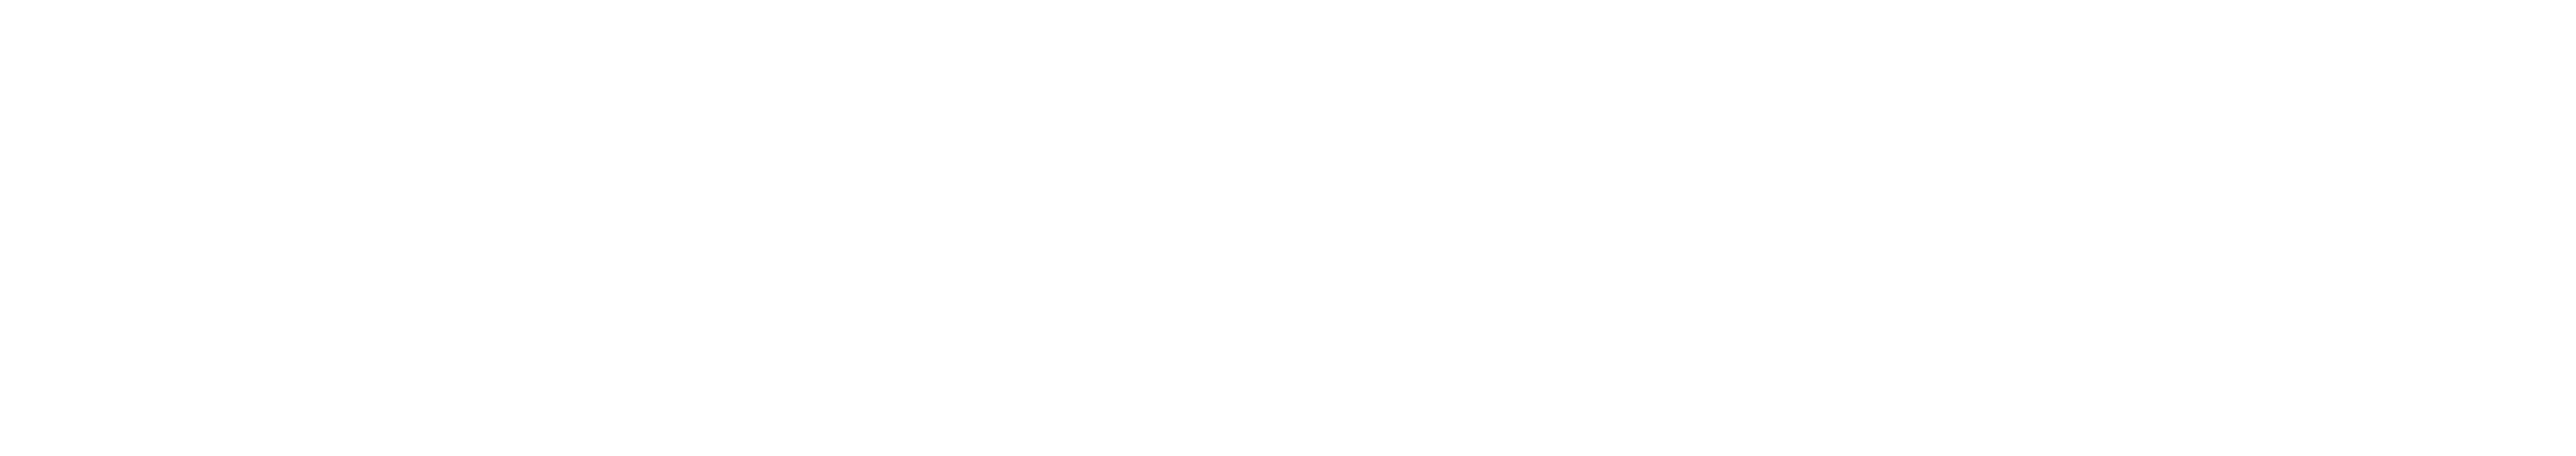 Logo til salonen